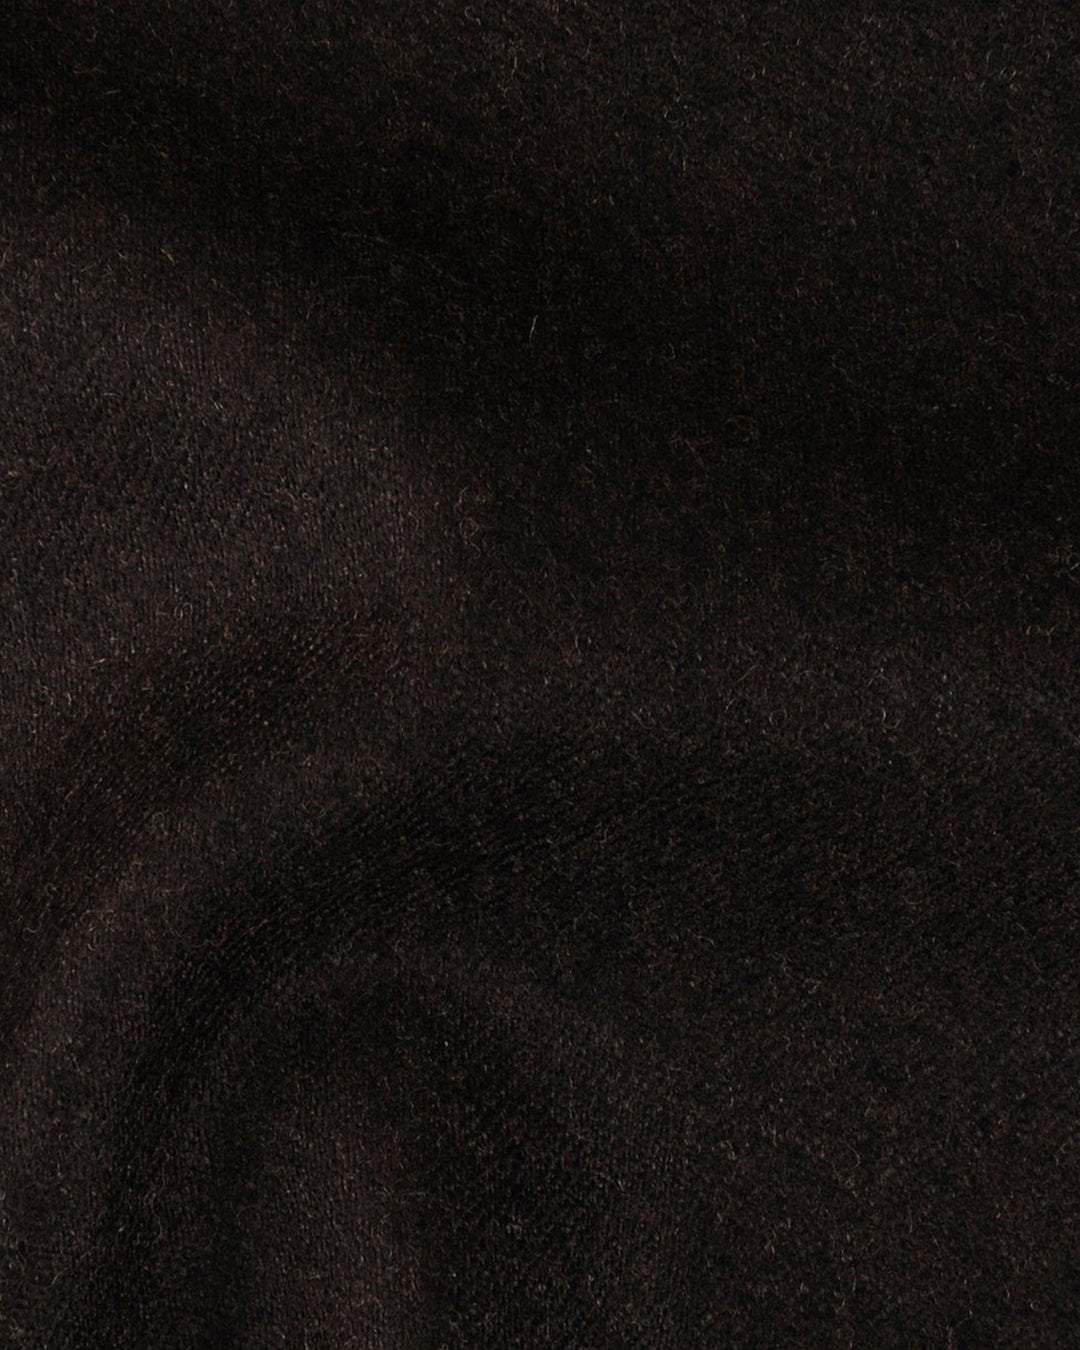 VBC Jacket: Dark Chocolate Brown Flannel